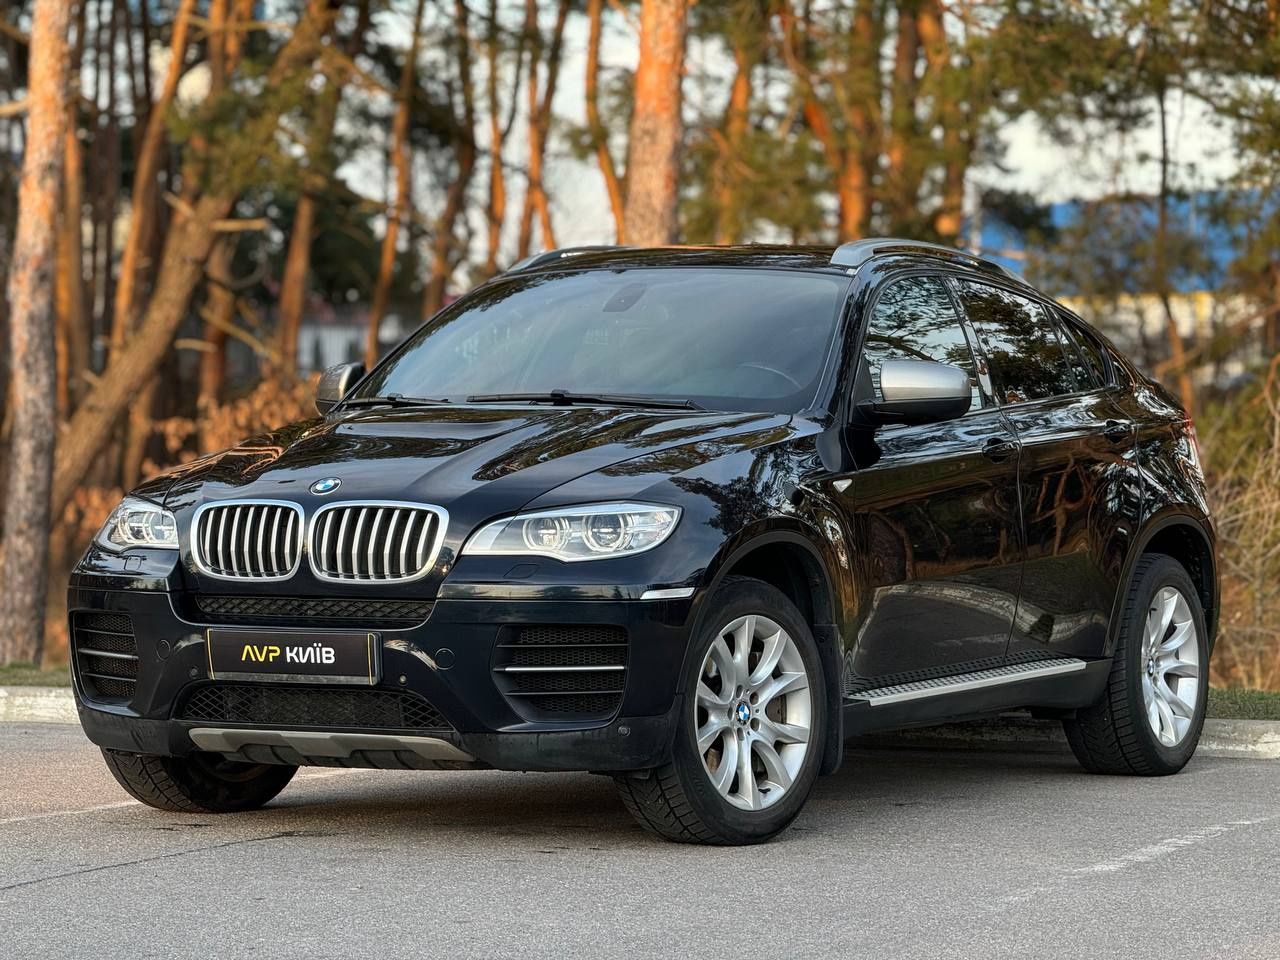 BMW X6M50D 2013 року, 3.0 дизель, автомат, повний привід, 157т.км.